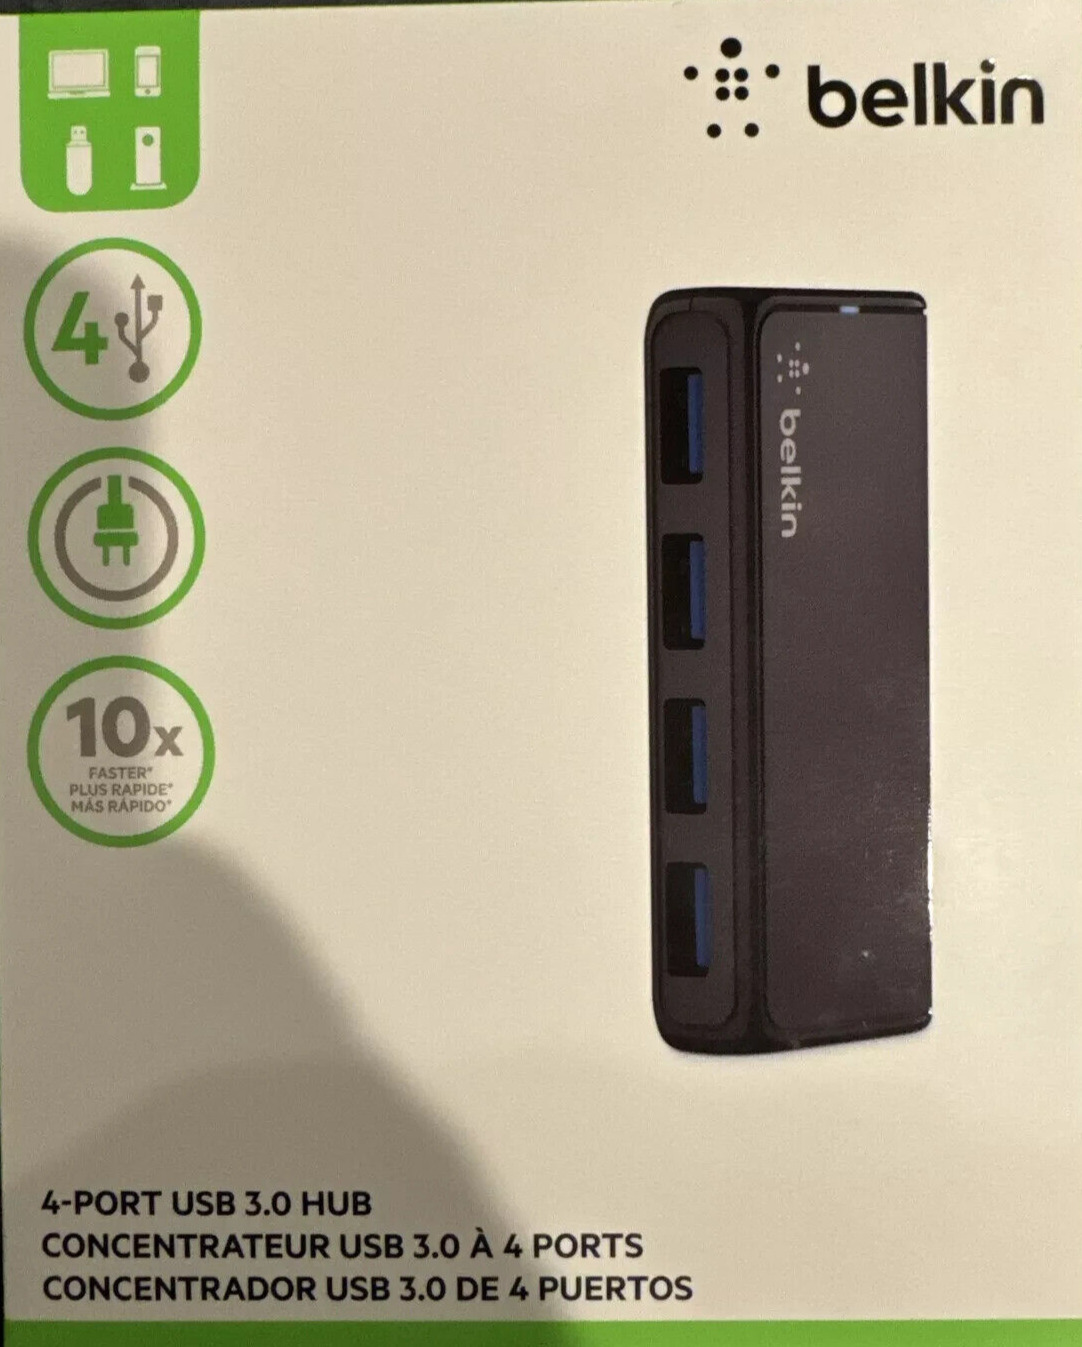 Belkin SuperSpeed USB 3.0 4-port Hub (F4U058tt)